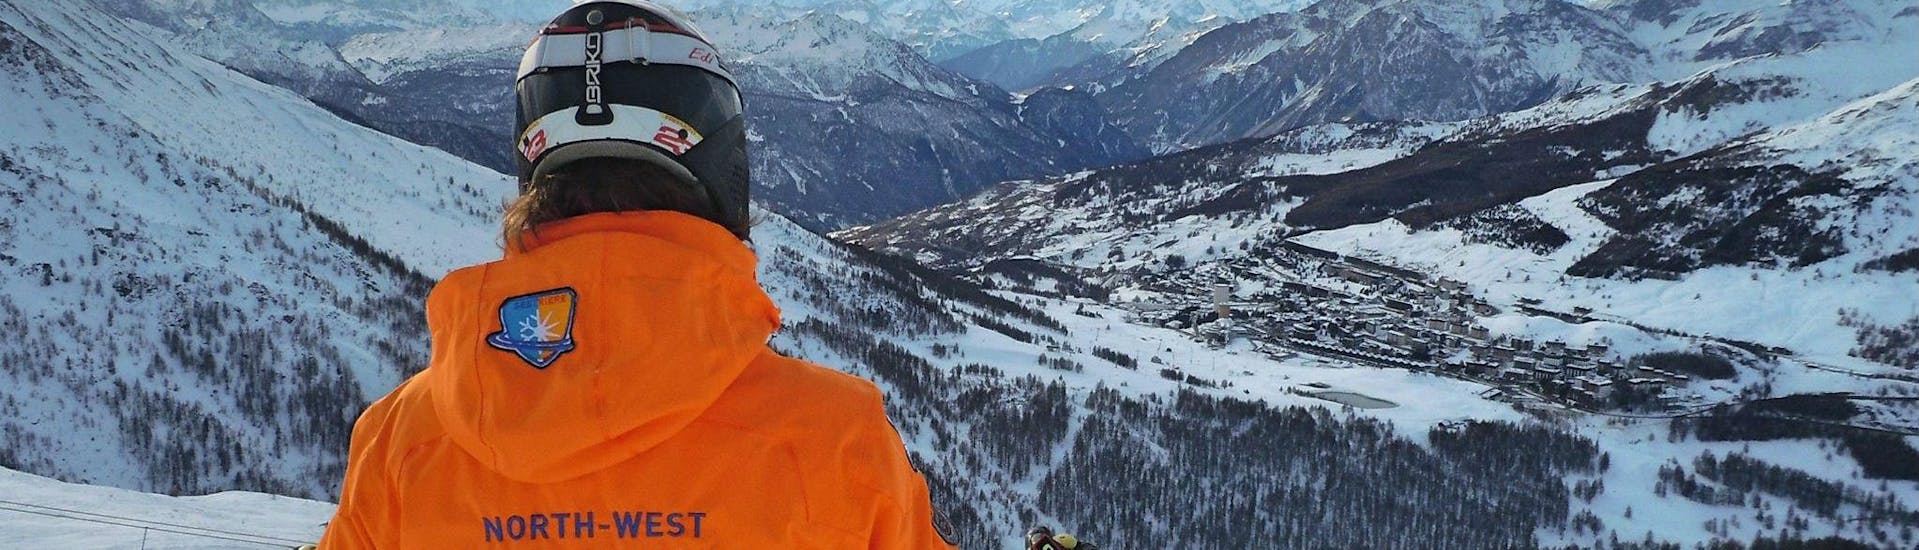 Uno sciatore sta ammirando le cime innevate del comprensorio sciistico di Sestriere durante una delle Lezioni di sci per adulti - Intermedi/Avanzati organizzate dalla scuola di sci YES Academy Sestriere.